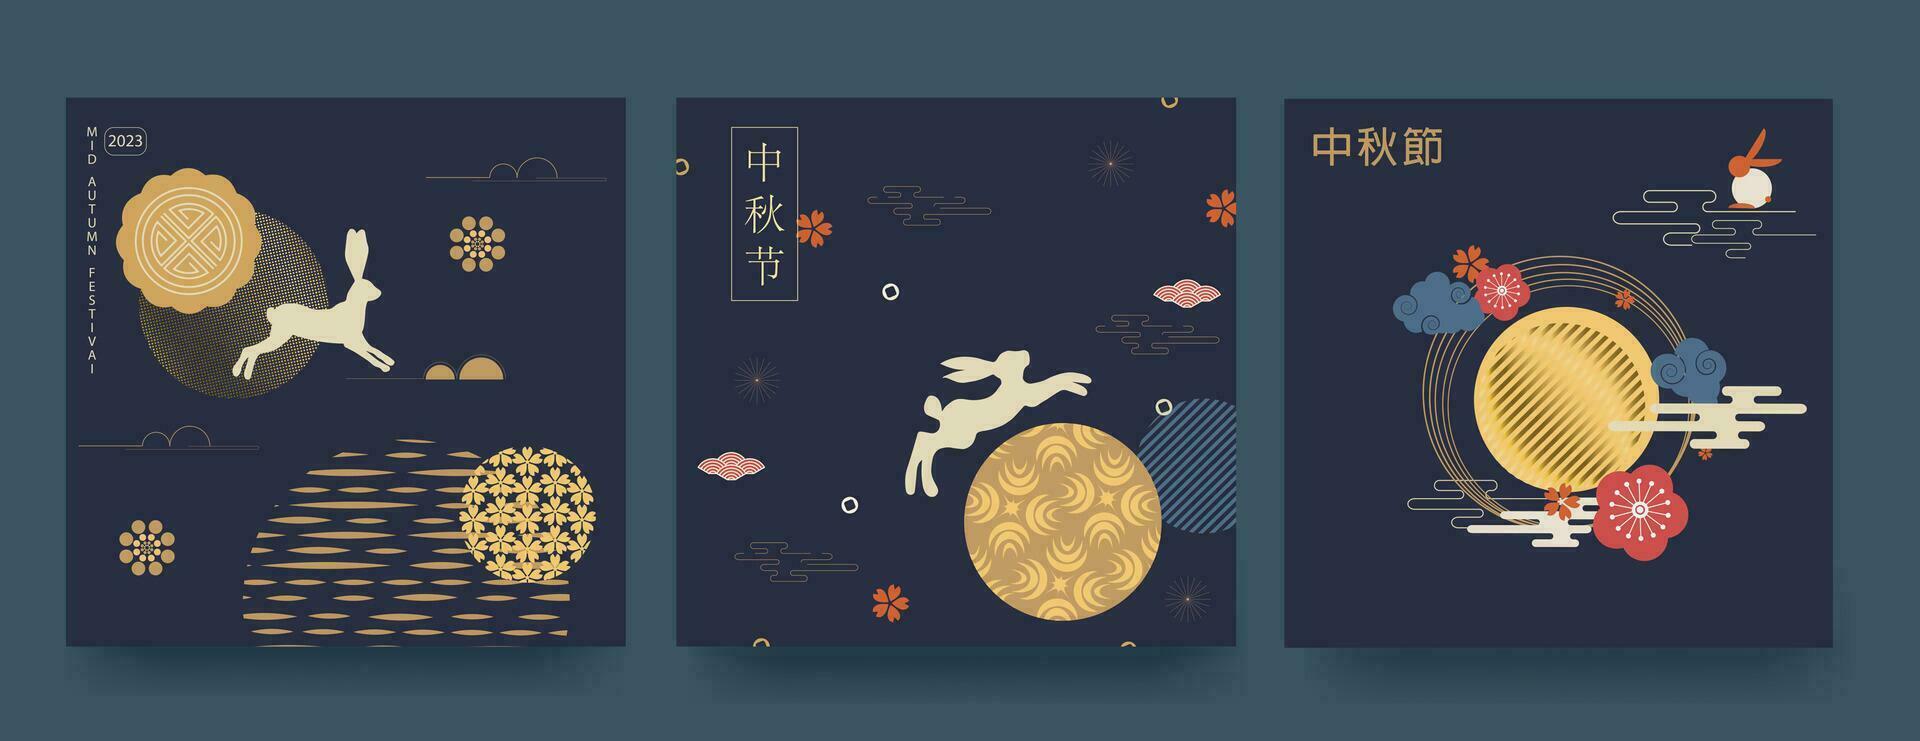 medio otoño festival minimalista estilo póster colocar, saludo tarjeta, antecedentes. Traducción desde chino mediados de otoño. vector ilustración